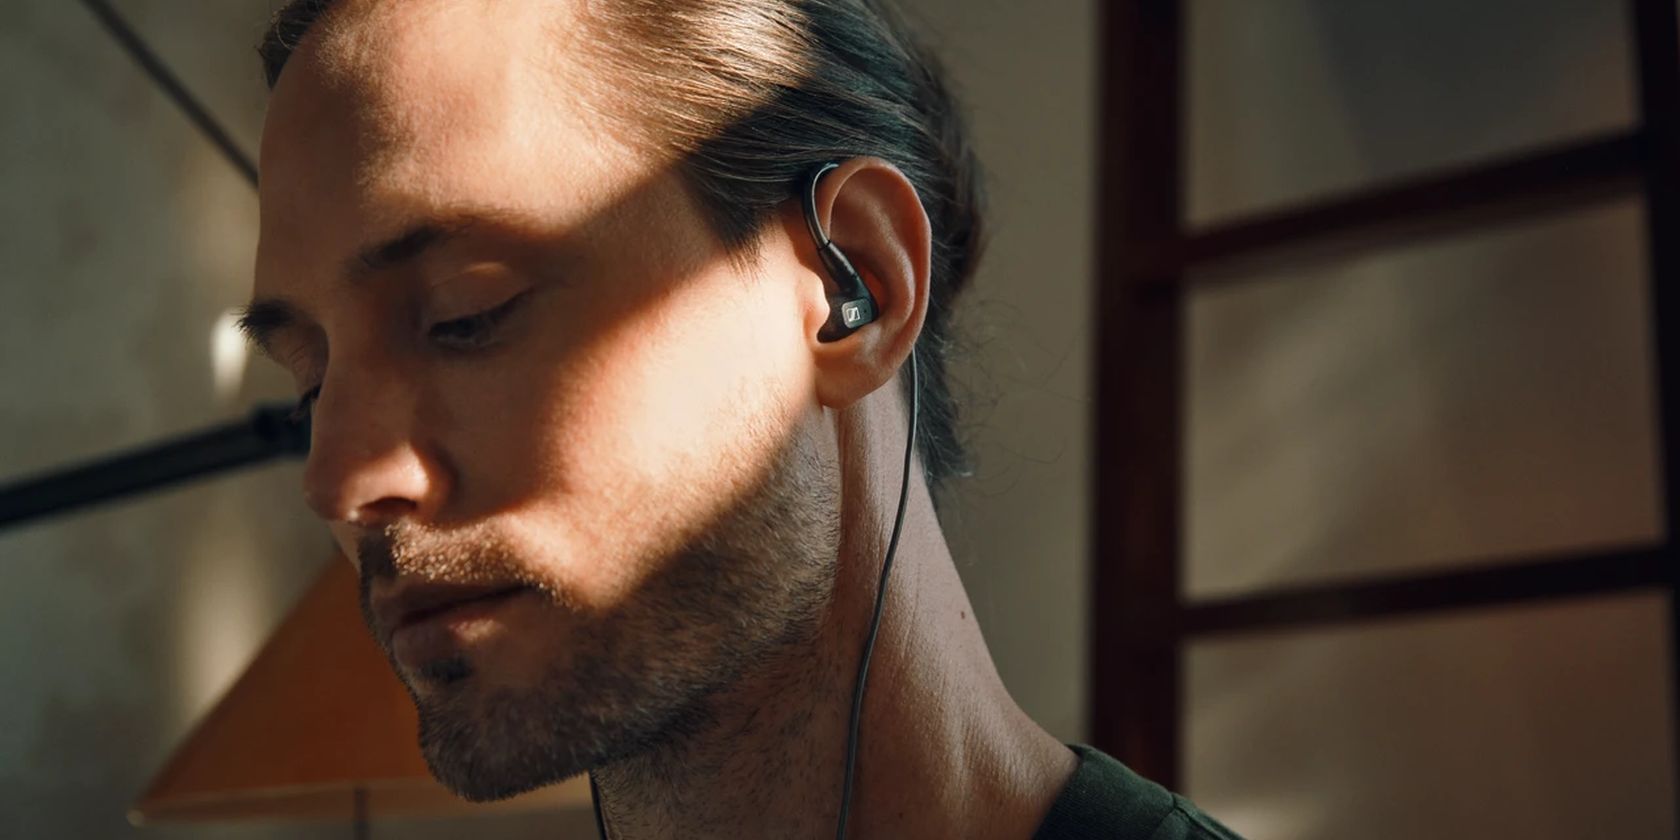 Sennheiser IE 300 in-ear headphones worn by young man.